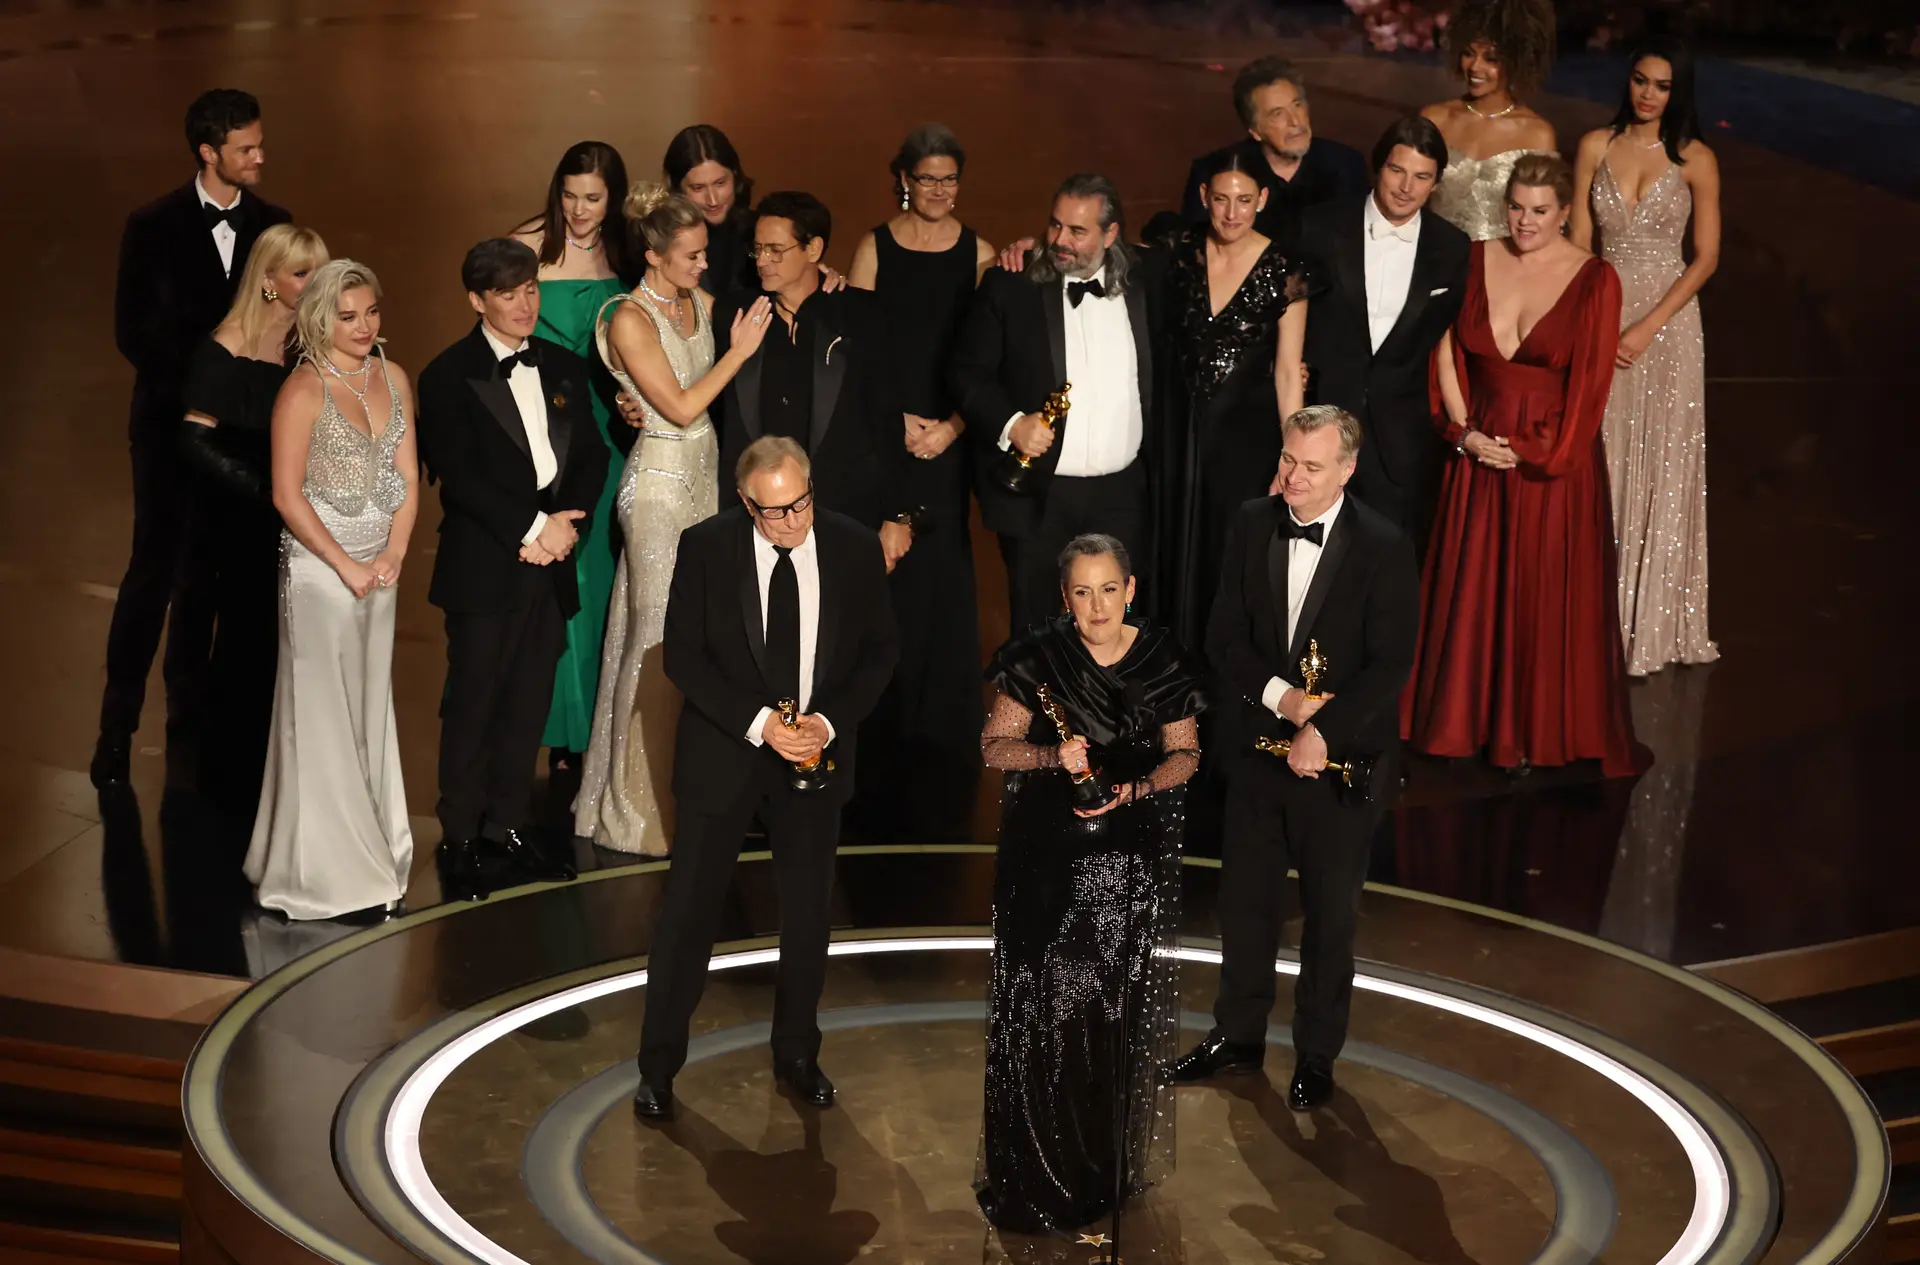 Voir la liste complète des lauréats des Oscars ici